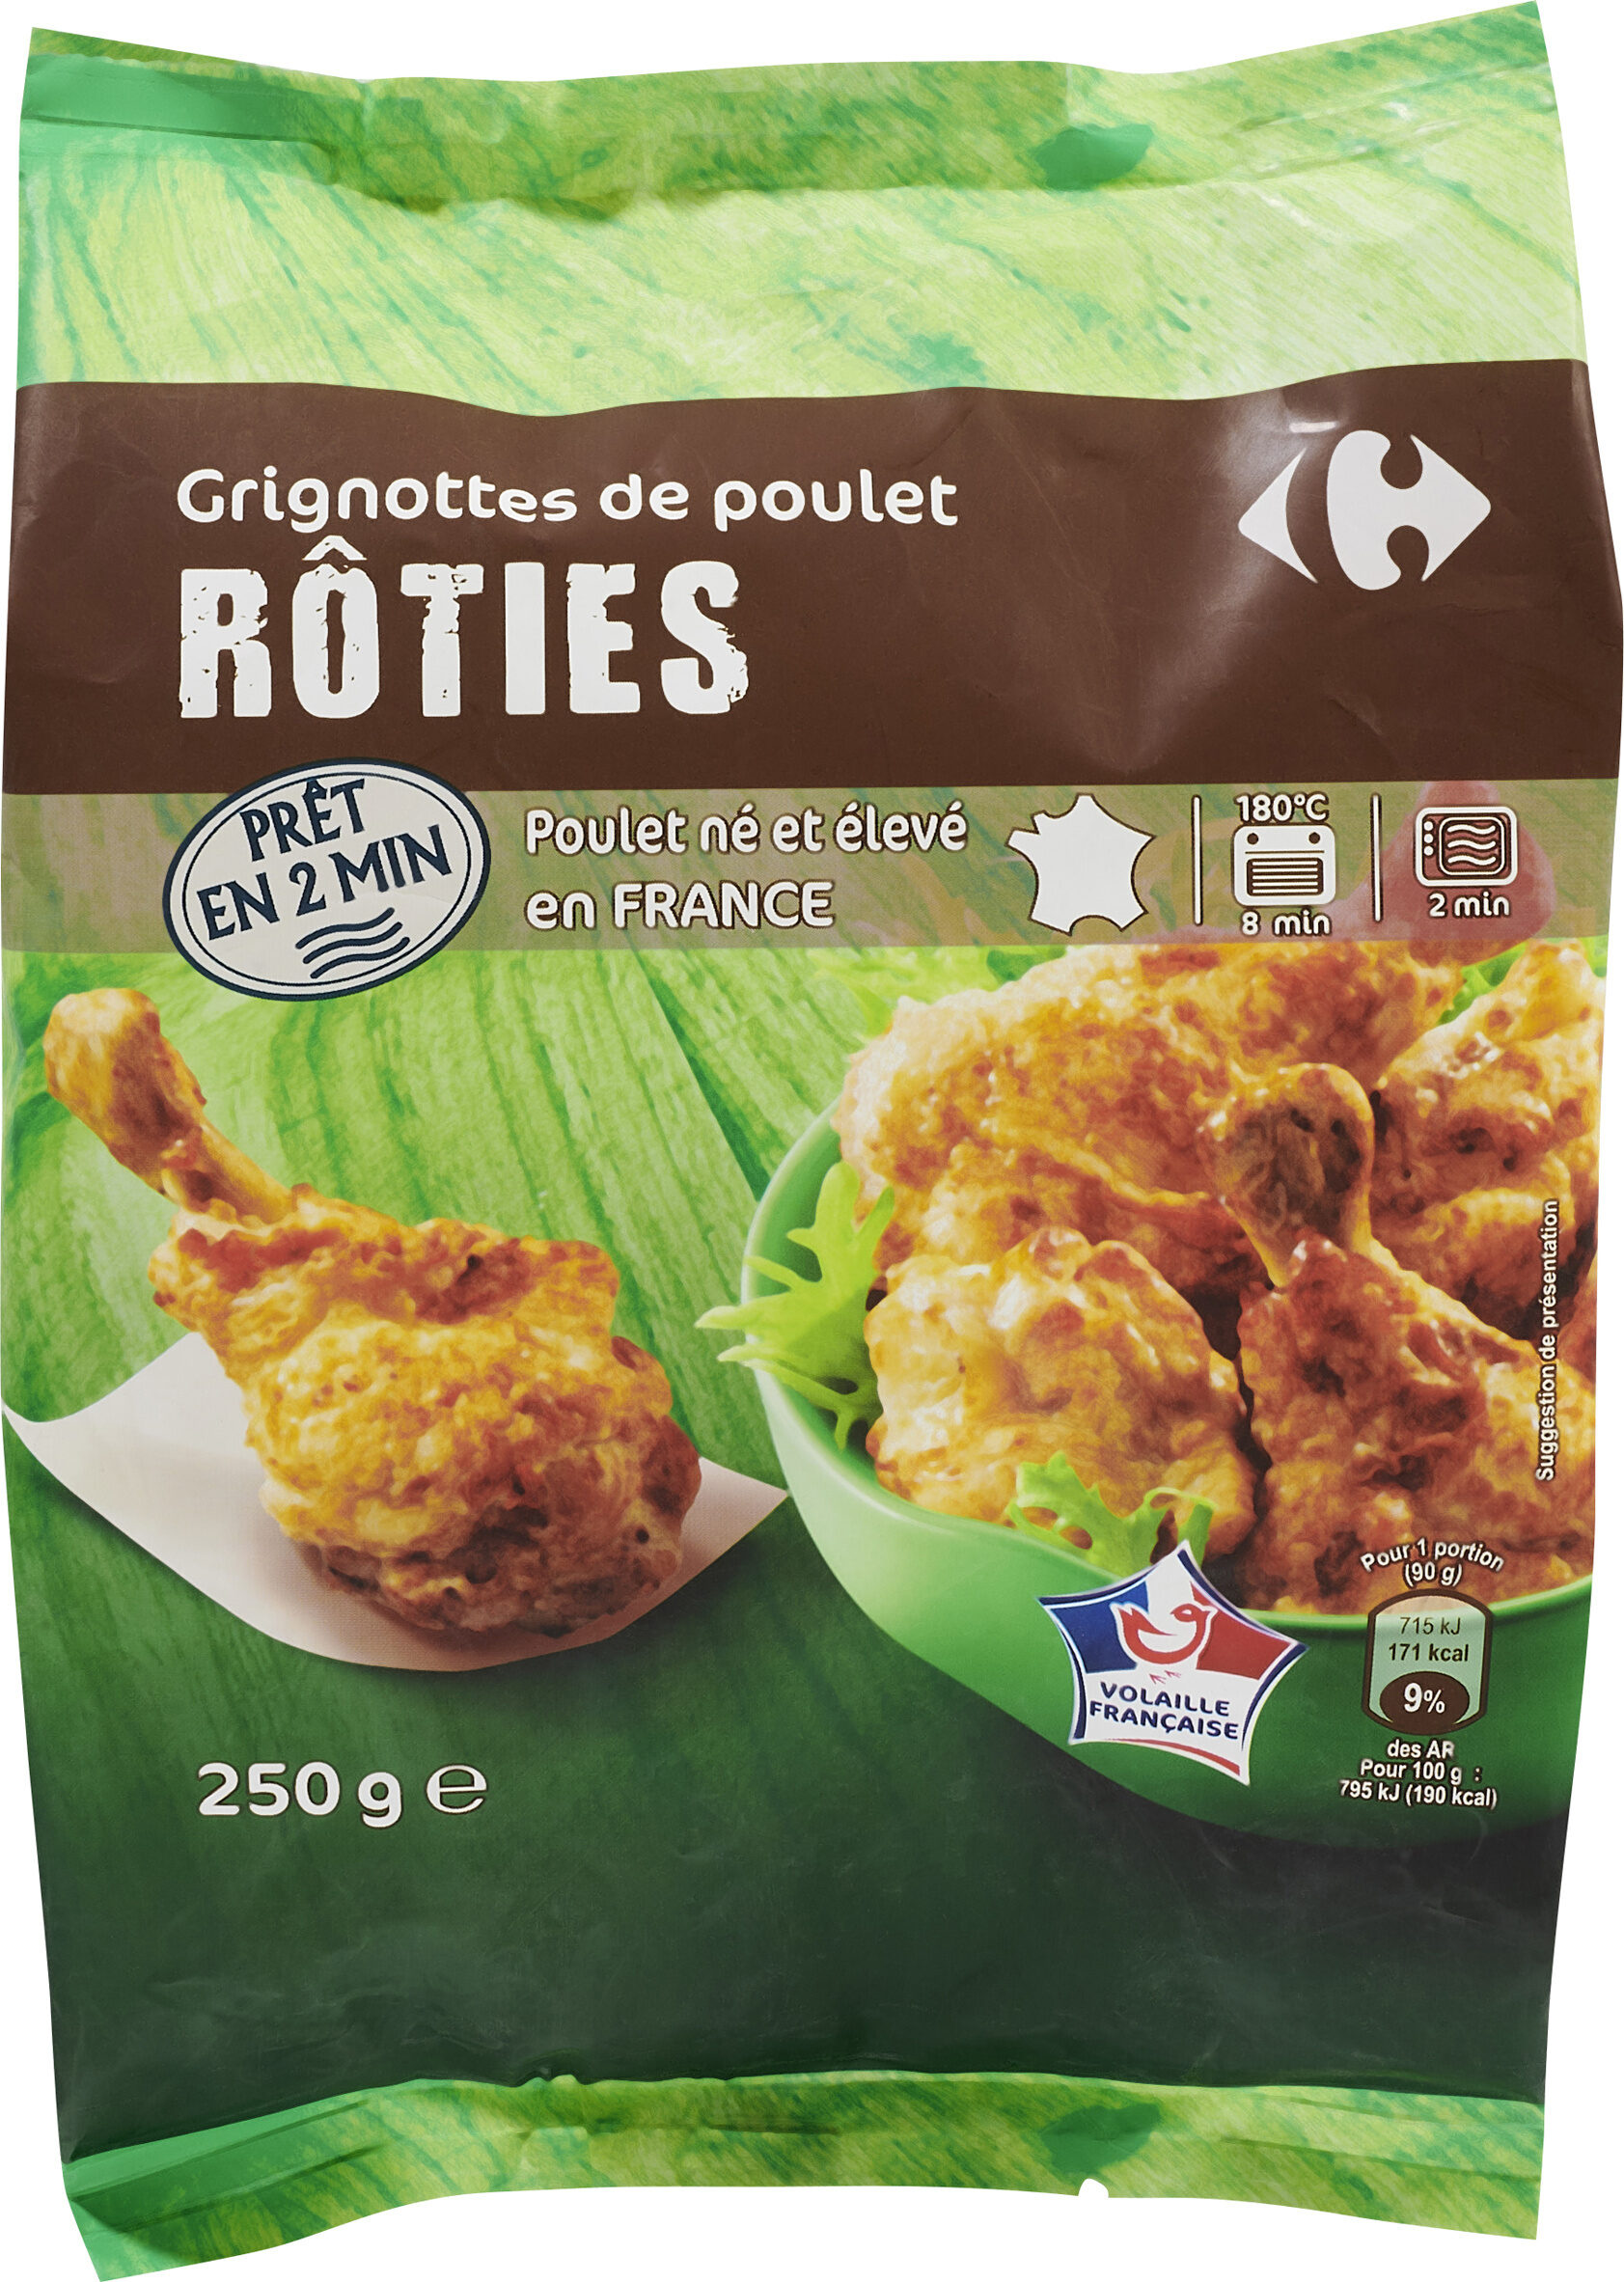 Grignottes de poulet rôties -Nature - Produit